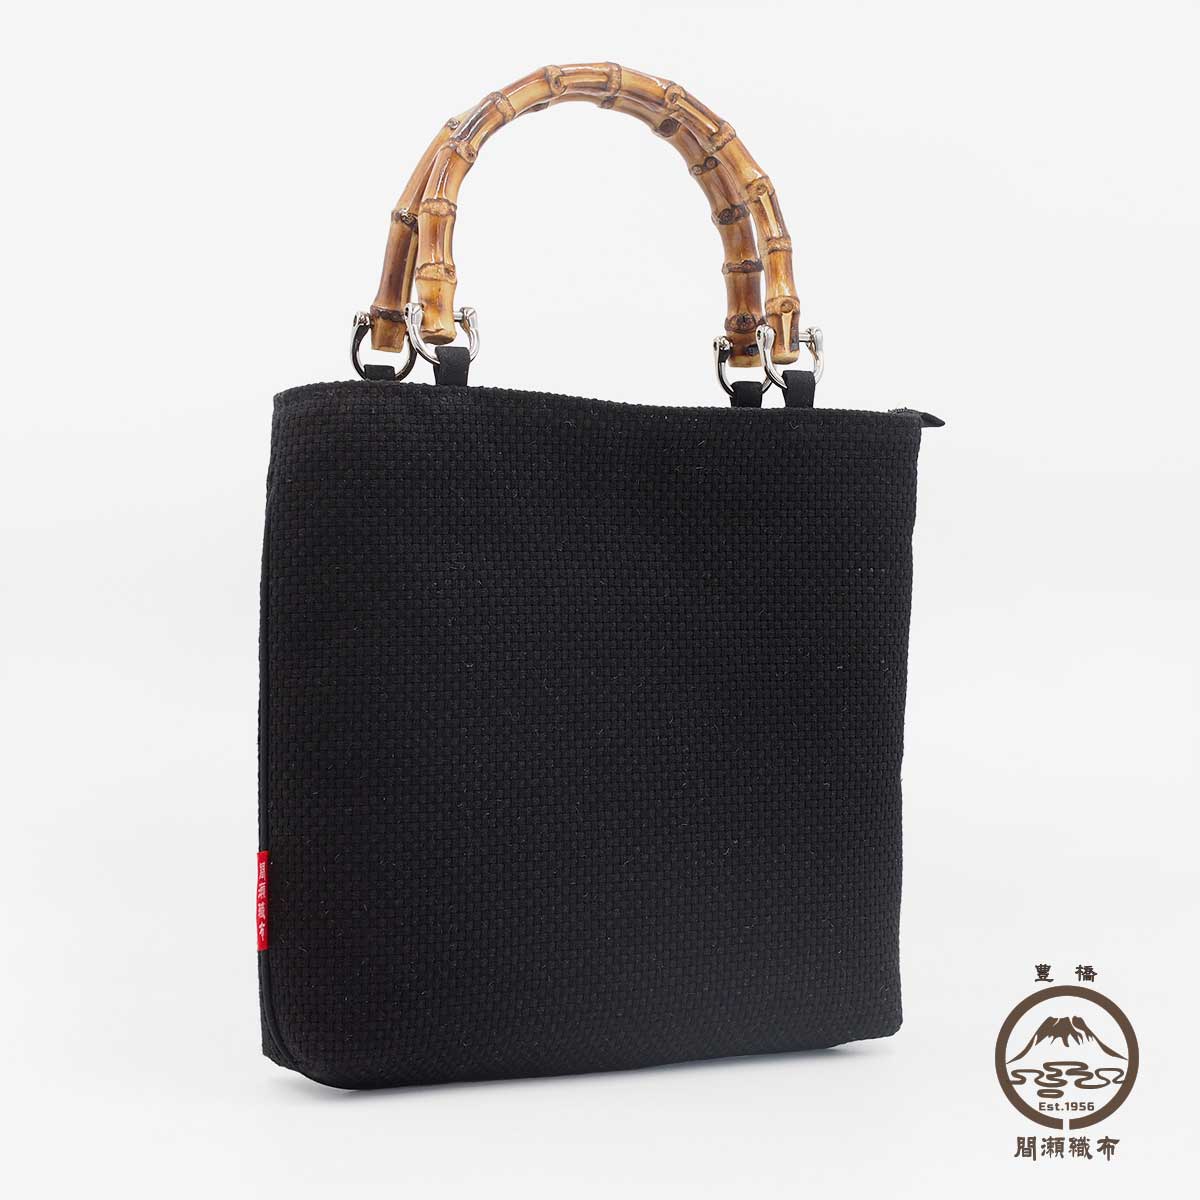 ... ручная сумка сумка bamboo бамбук производства держать рука белый чёрный чёрный квадратное праздник сопутствующие товары японский костюм японский стиль праздник мелкие вещи праздник пакет 